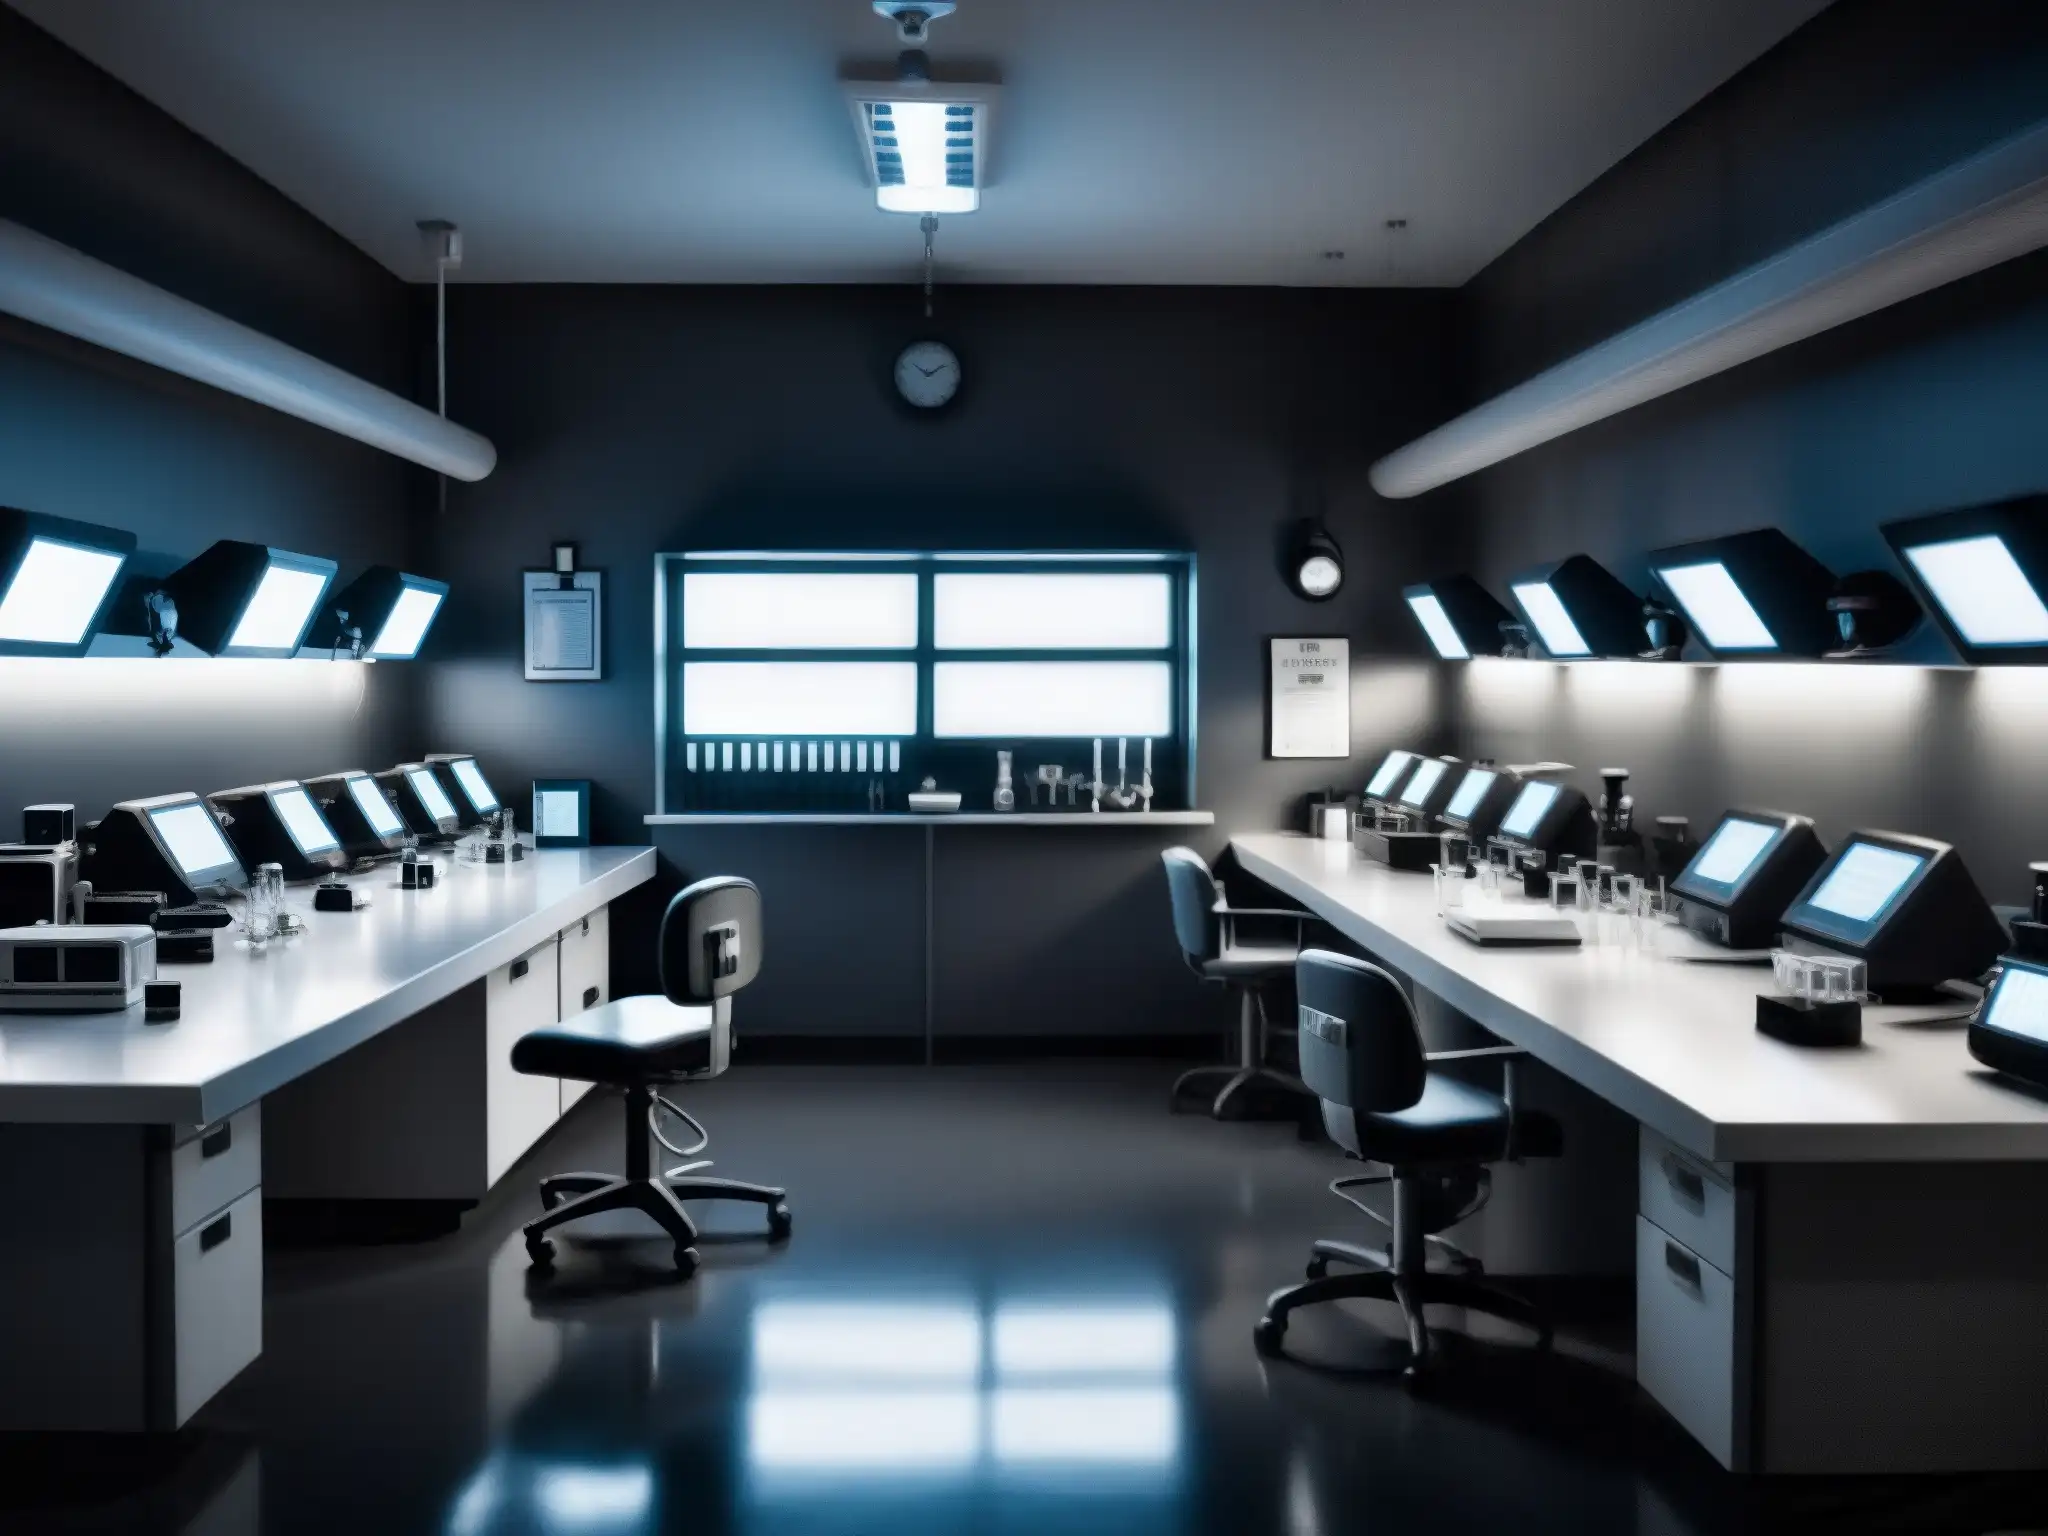 Una sala de laboratorio sombría y misteriosa con equipo médico antiguo y monitores